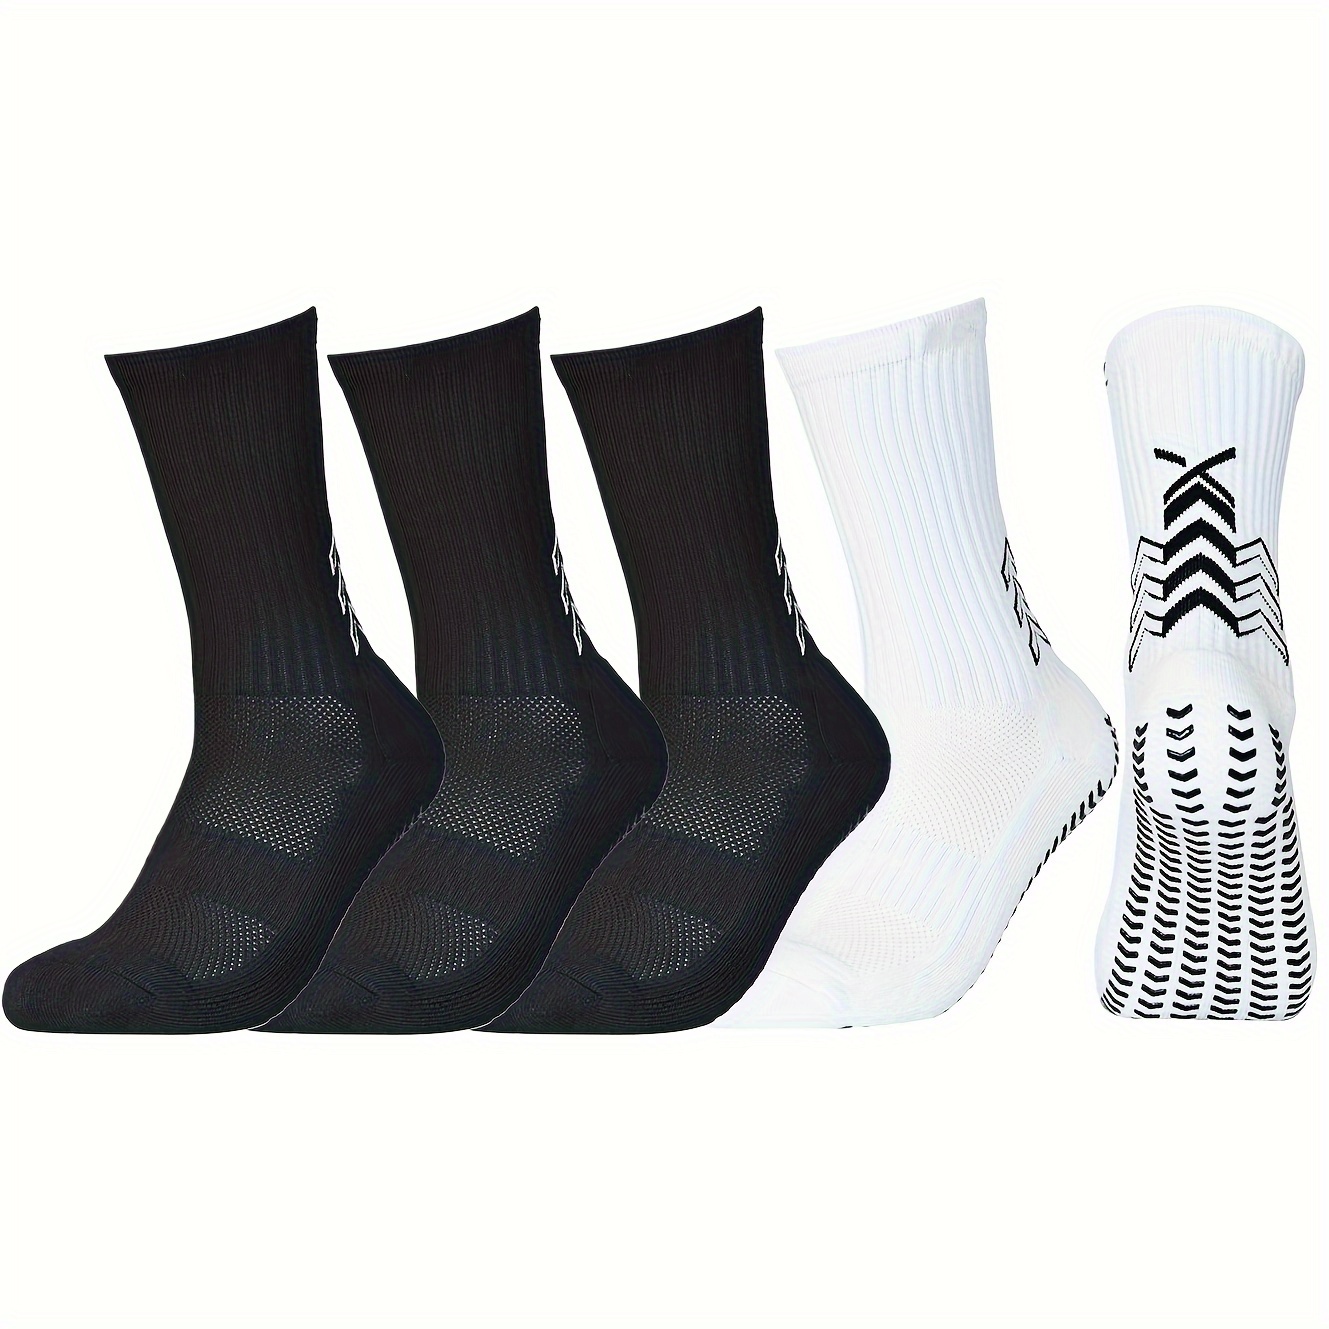 

5pairs Men's Football Socks Grip Socks - Geometric Pattern Soccer, Basketball Cycling Running Exercise Athletic Socks, Men's Hosiery